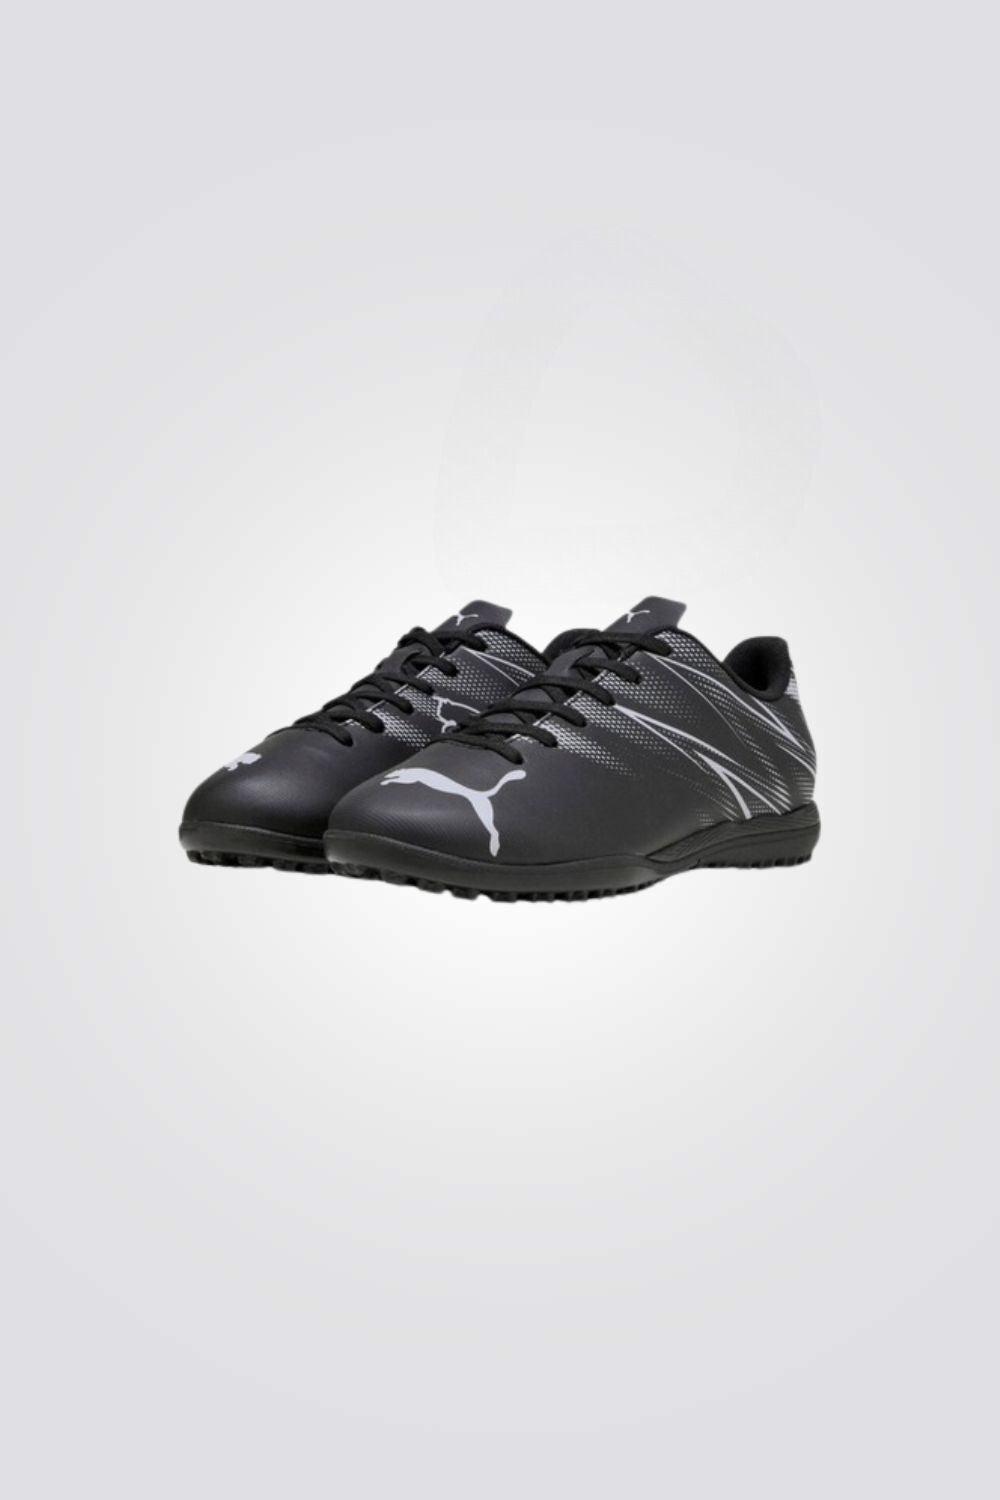 נעלי קטרגל לילדים ונוער ATTACANTO TT בצבע שחור